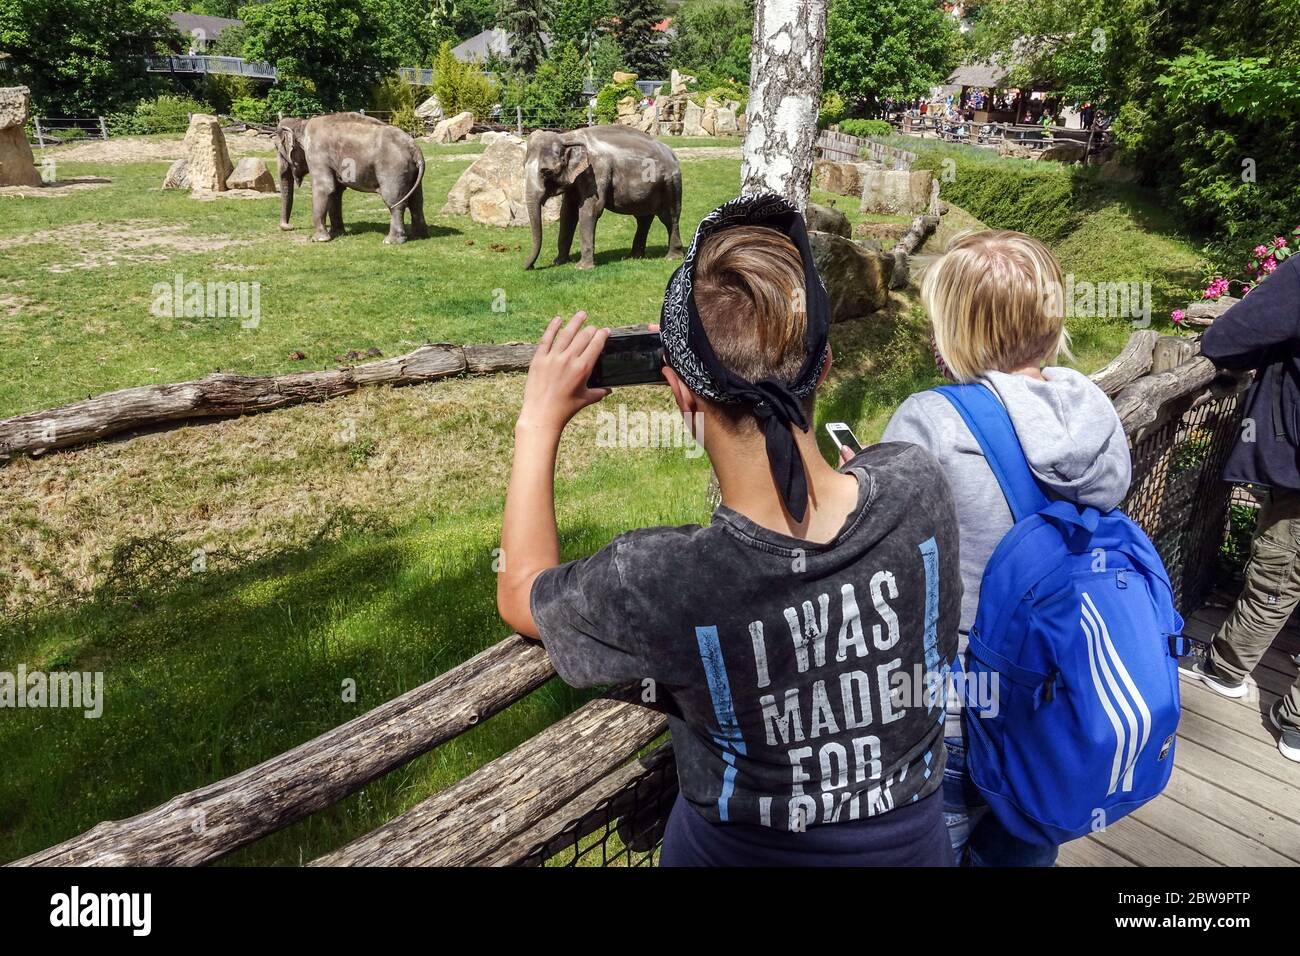 Menschen und Besucher schauen sich die Elefanten im Prager Zoo an, eine gute Veranstaltung für einen Tagesausflug für Familie mit Kindern Tschechische Republik Alltag Zoo Tiere Menschen Stockfoto